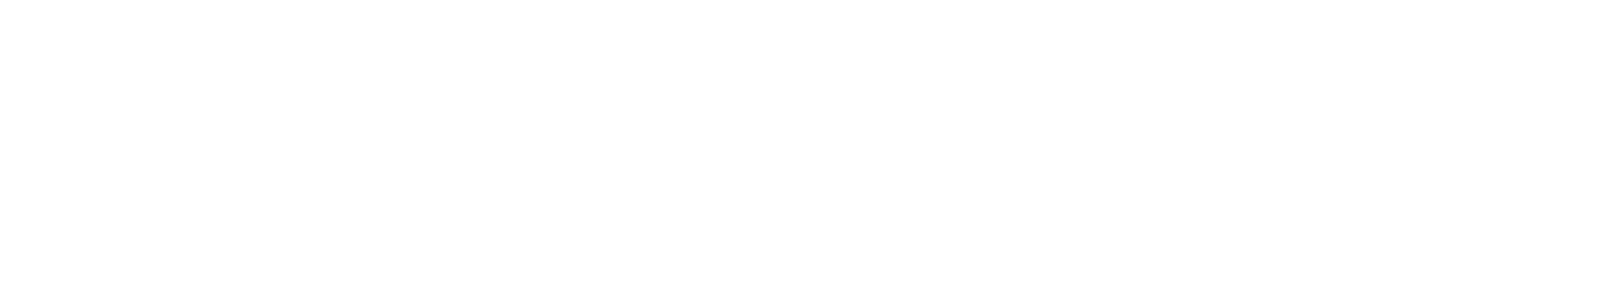 Onex logo grand pour les fonds sombres (PNG transparent)